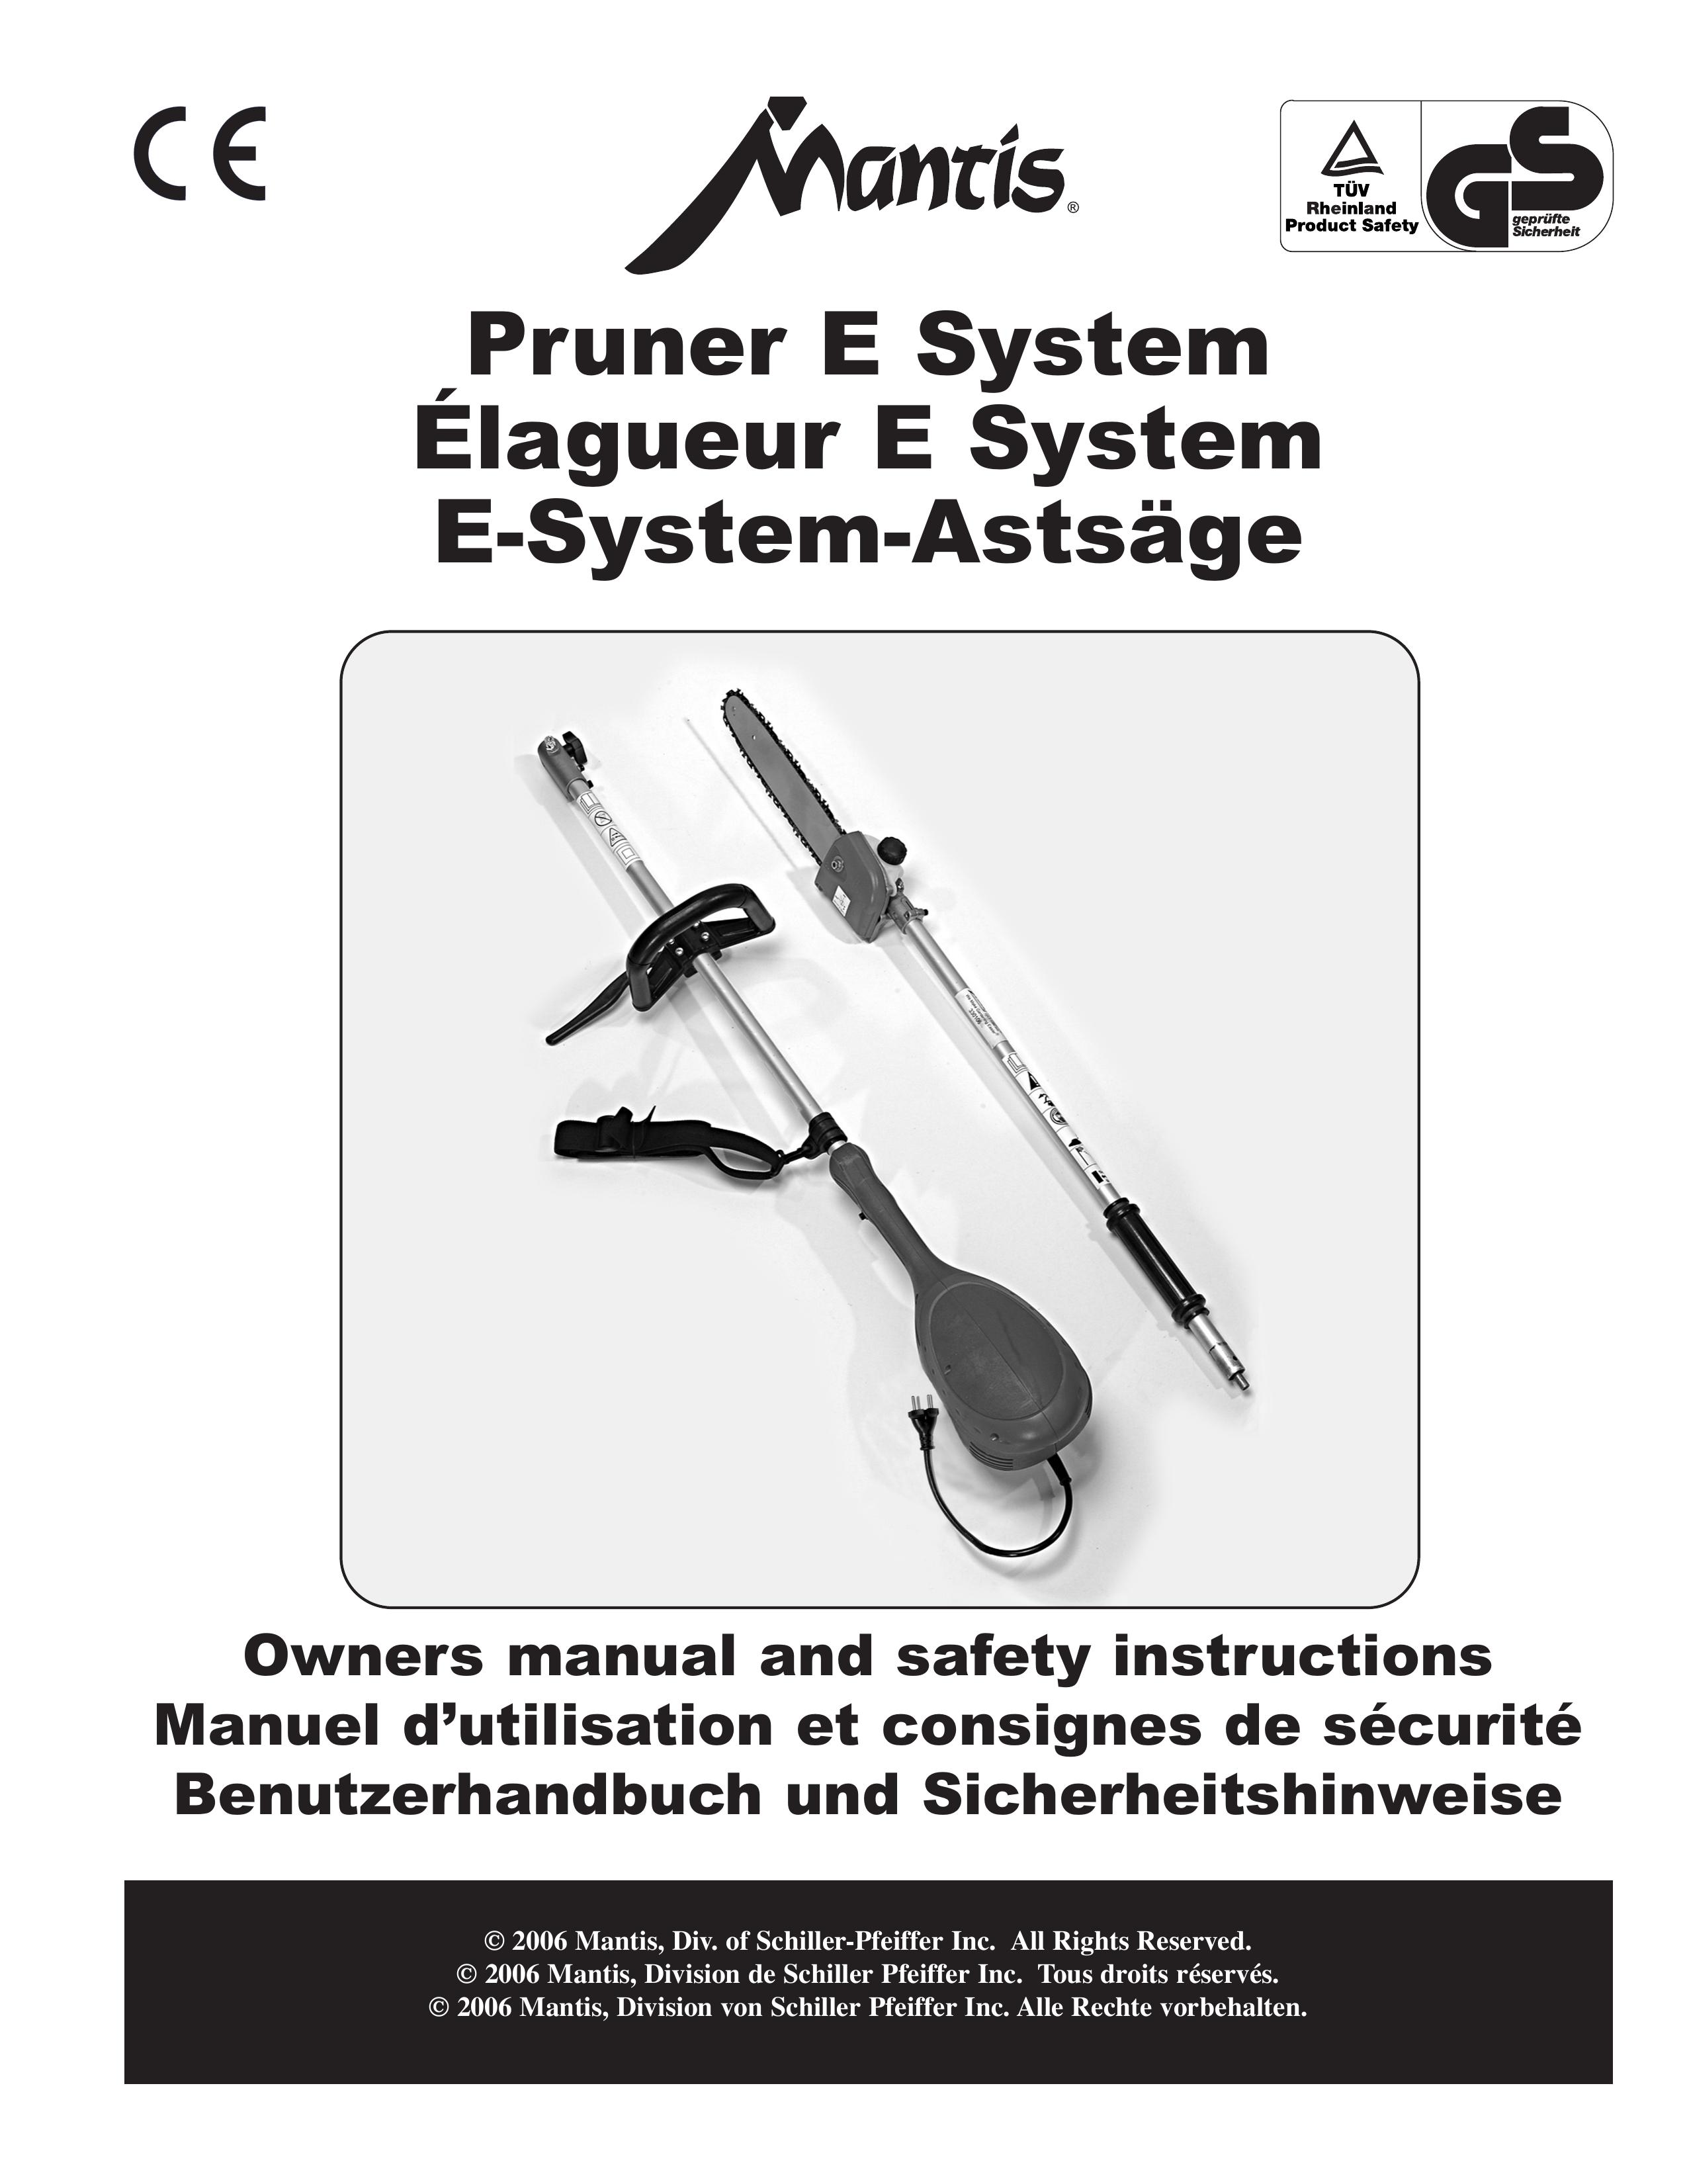 Mantis Pruner E System Trimmer User Manual